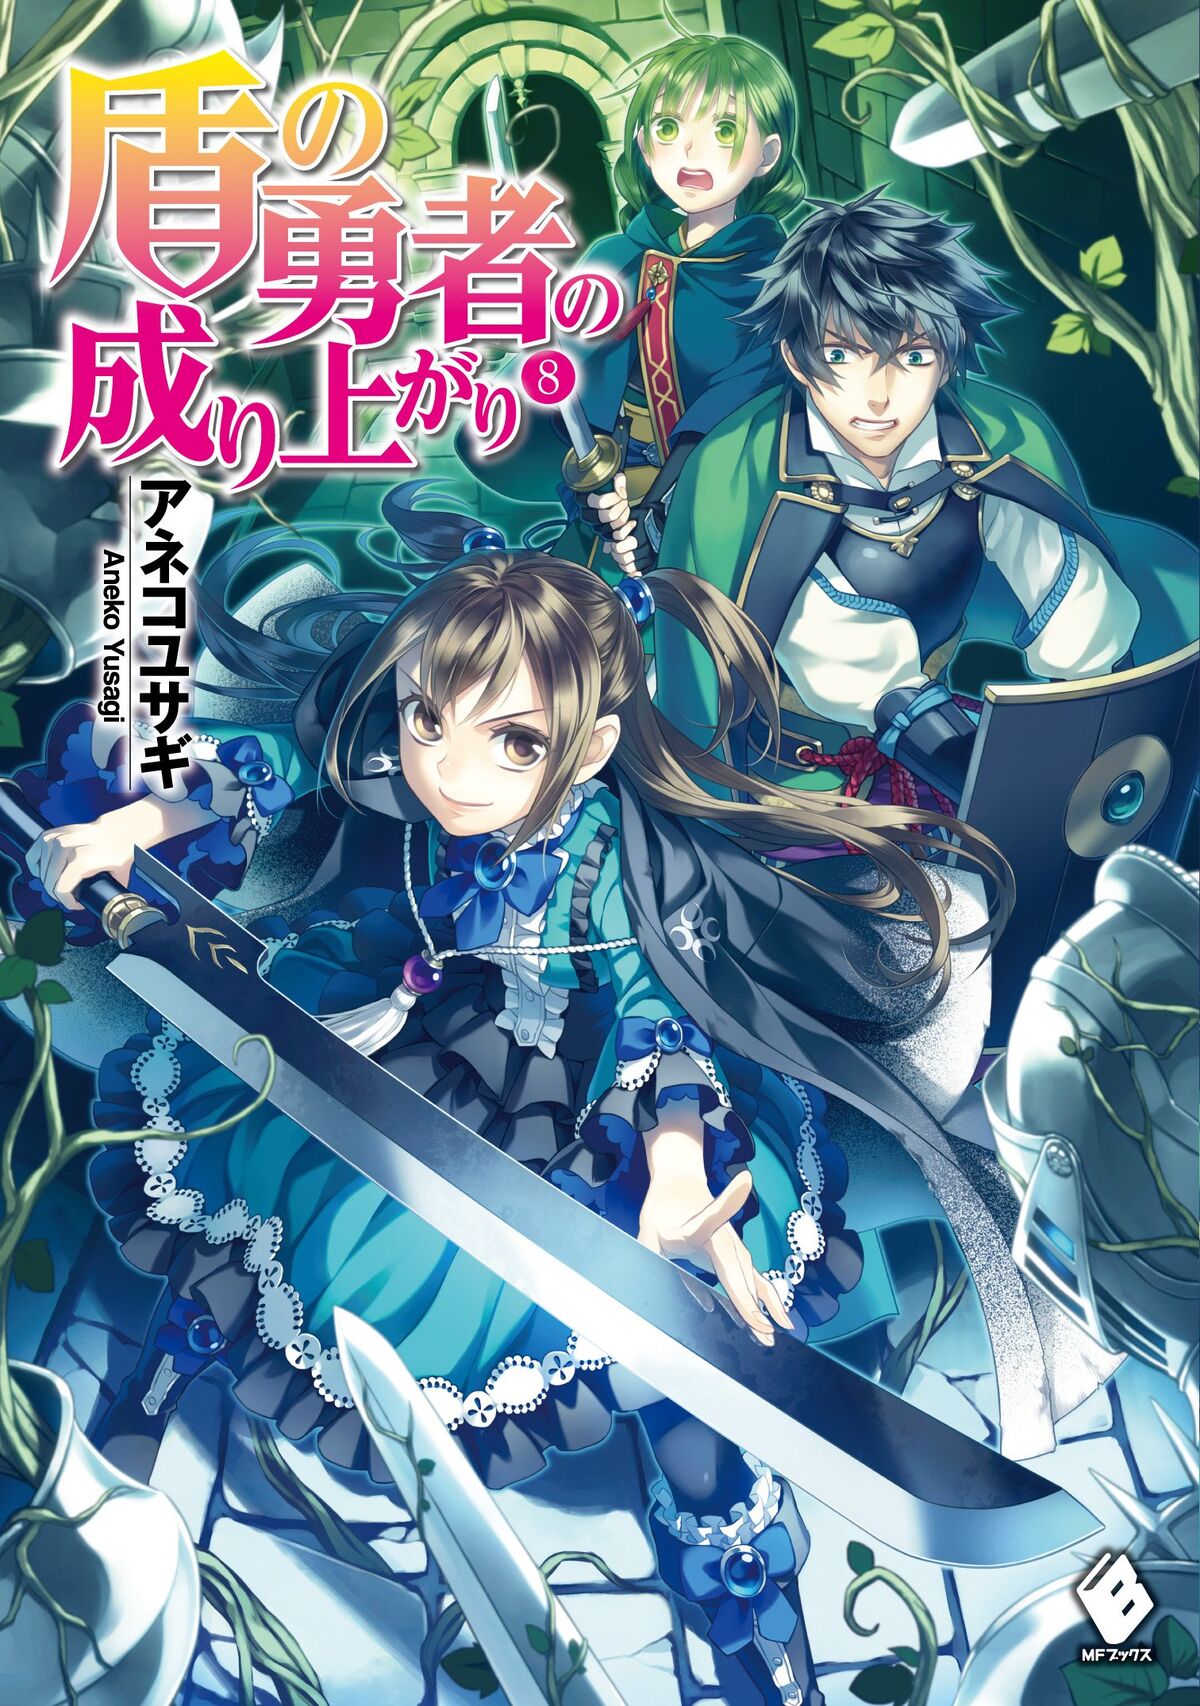 Light Novel Volume 3, The Rising of the Shield Hero Wiki